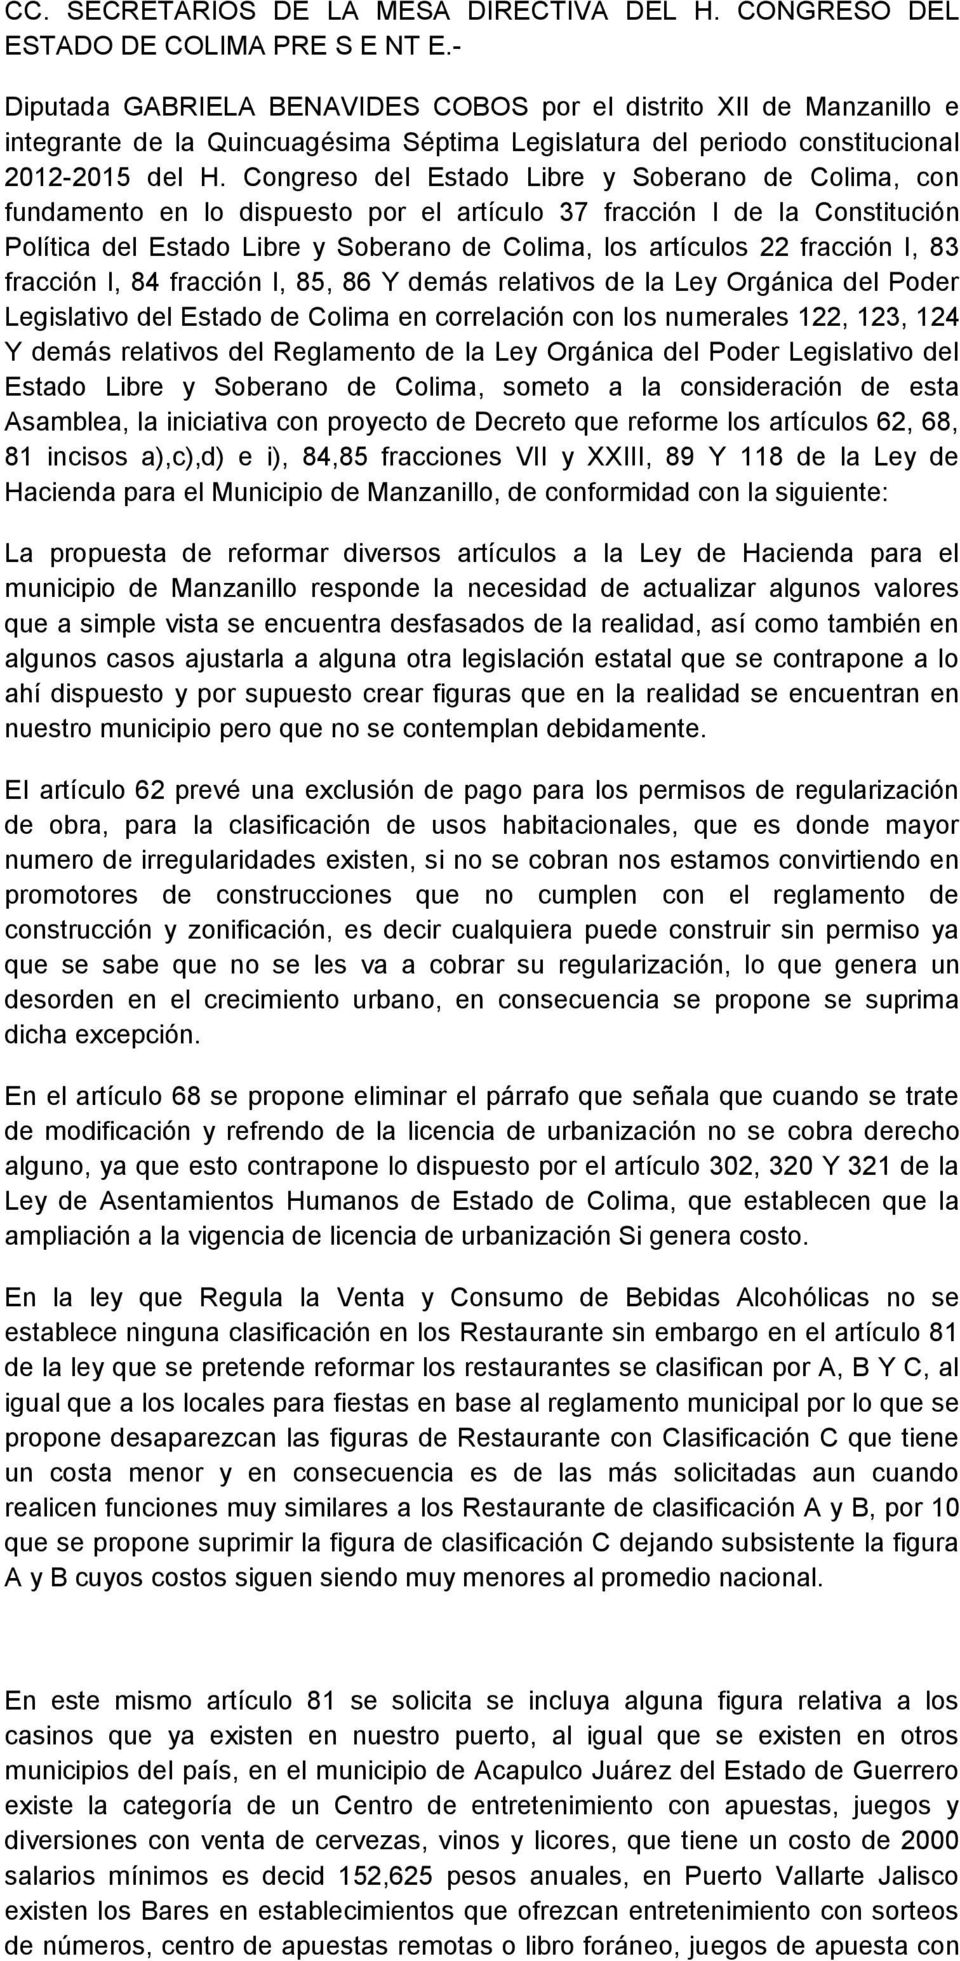 Congreso del Estado Libre y Soberano de Colima, con fundamento en lo dispuesto por el artículo 37 fracción I de la Constitución Política del Estado Libre y Soberano de Colima, los artículos 22